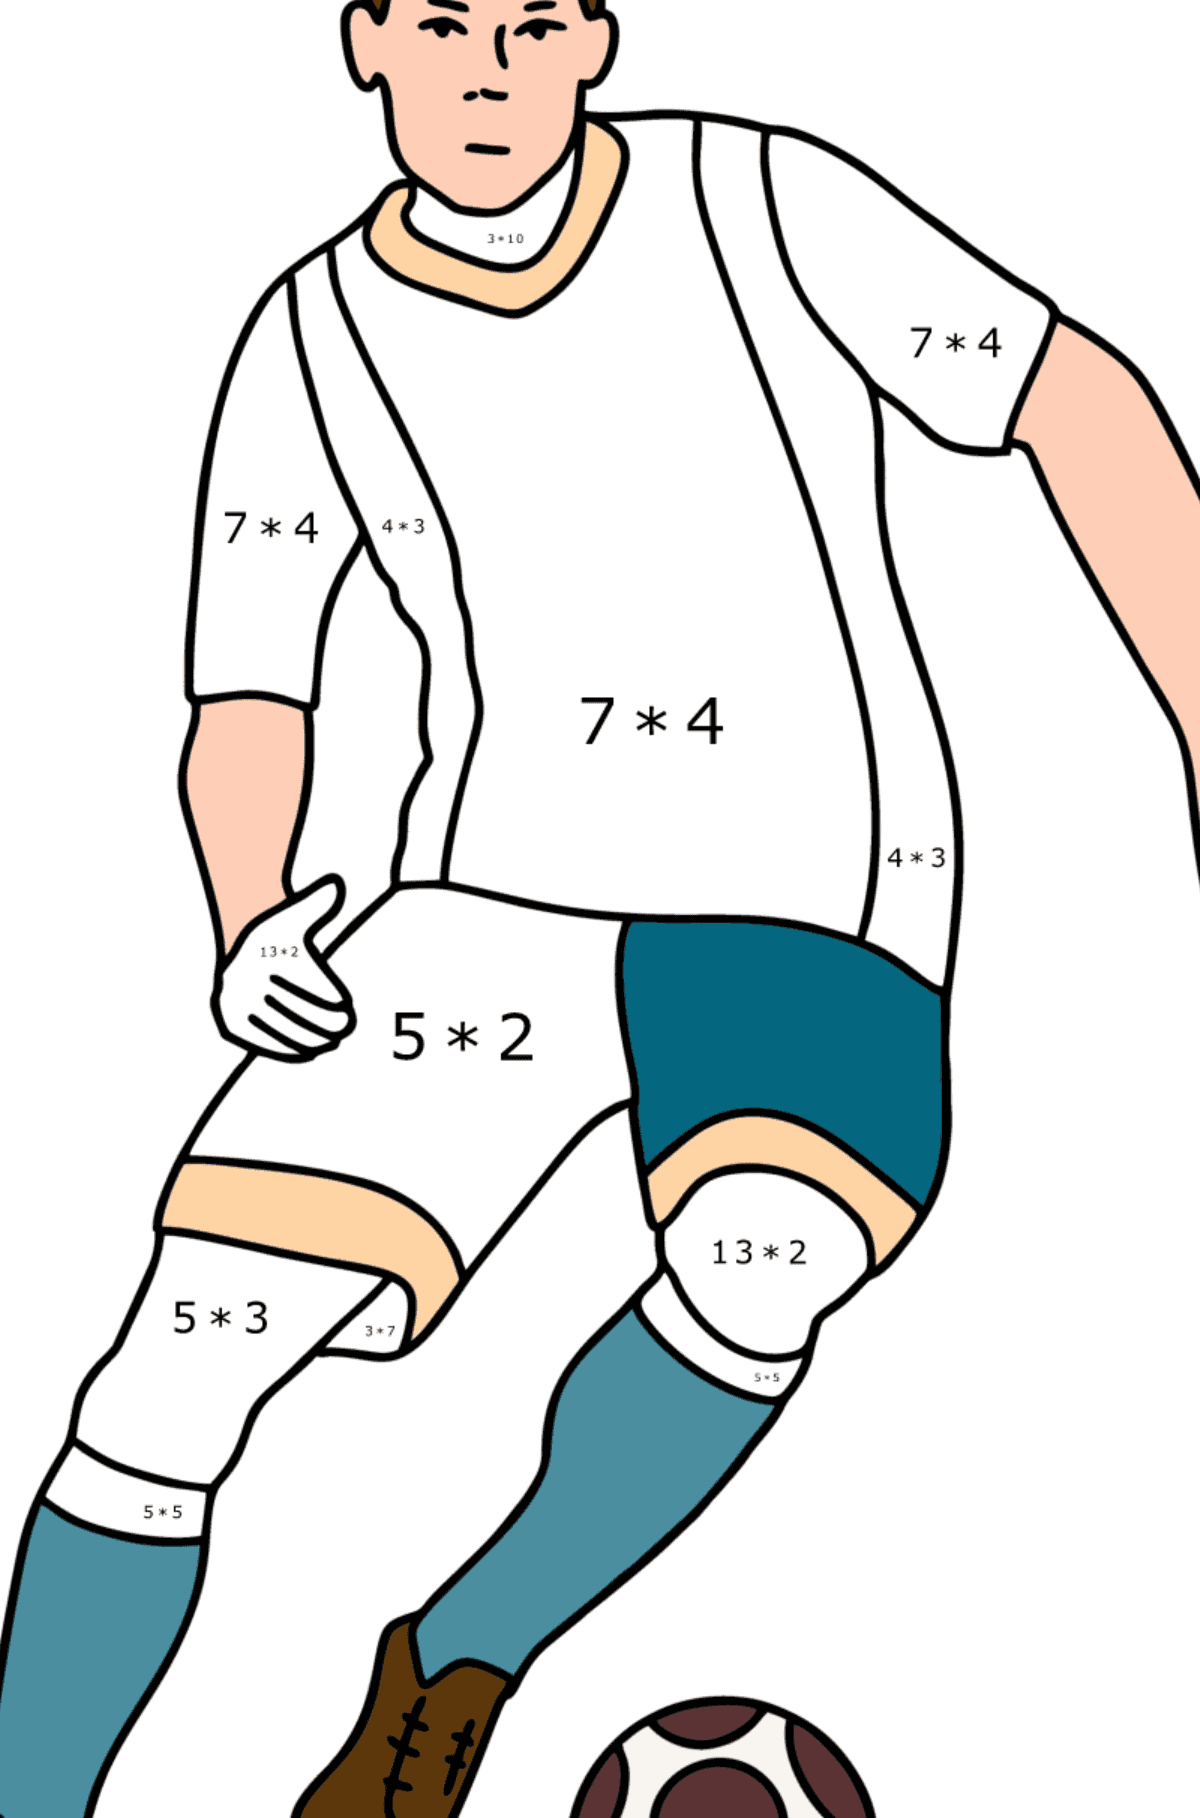 UEFA-Fußballspieler ausmalbild - Mathe Ausmalbilder - Multiplikation für Kinder